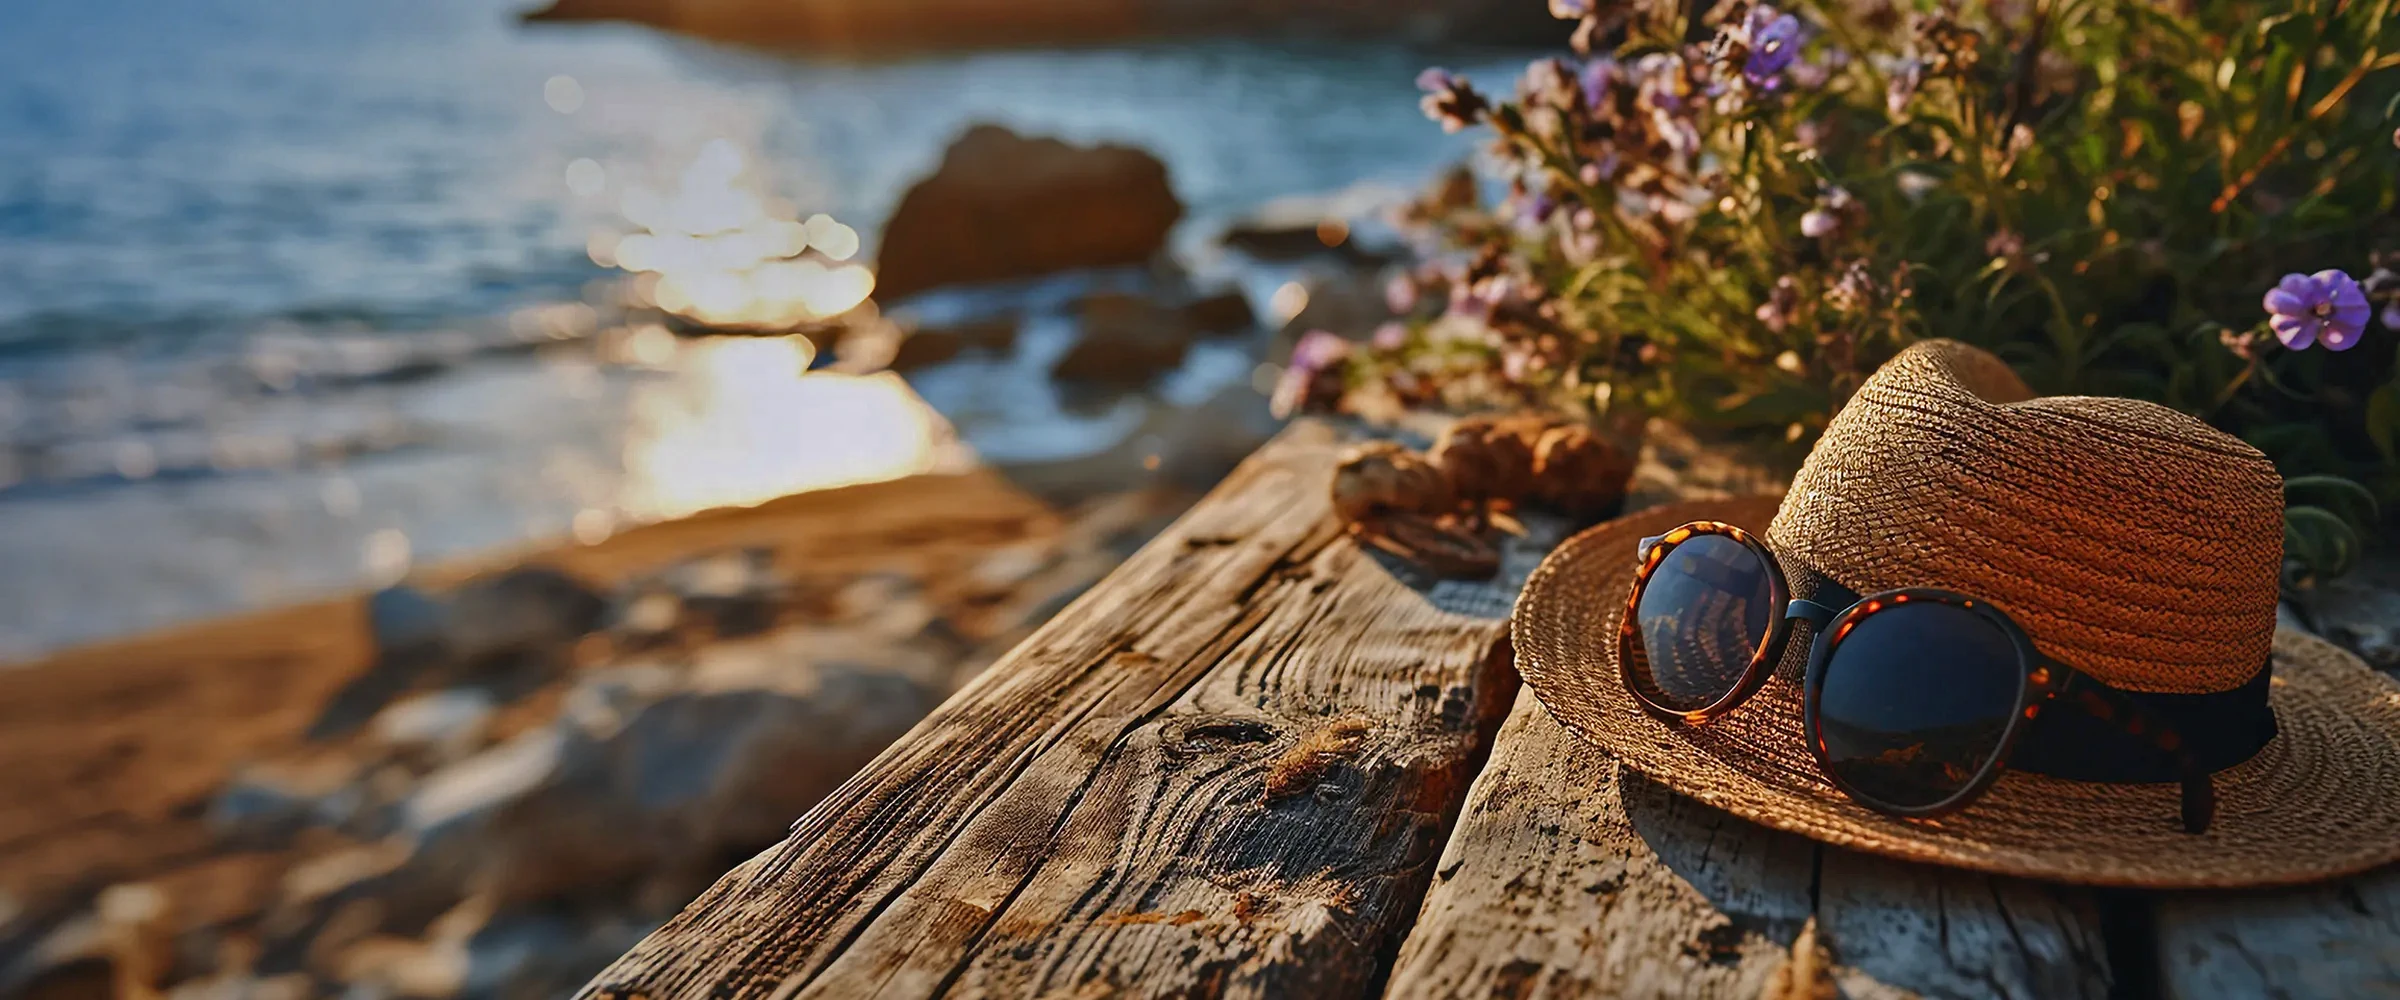 chapéu de palha e óculos de sol, numa mesa de madeira com flores junto ao mar